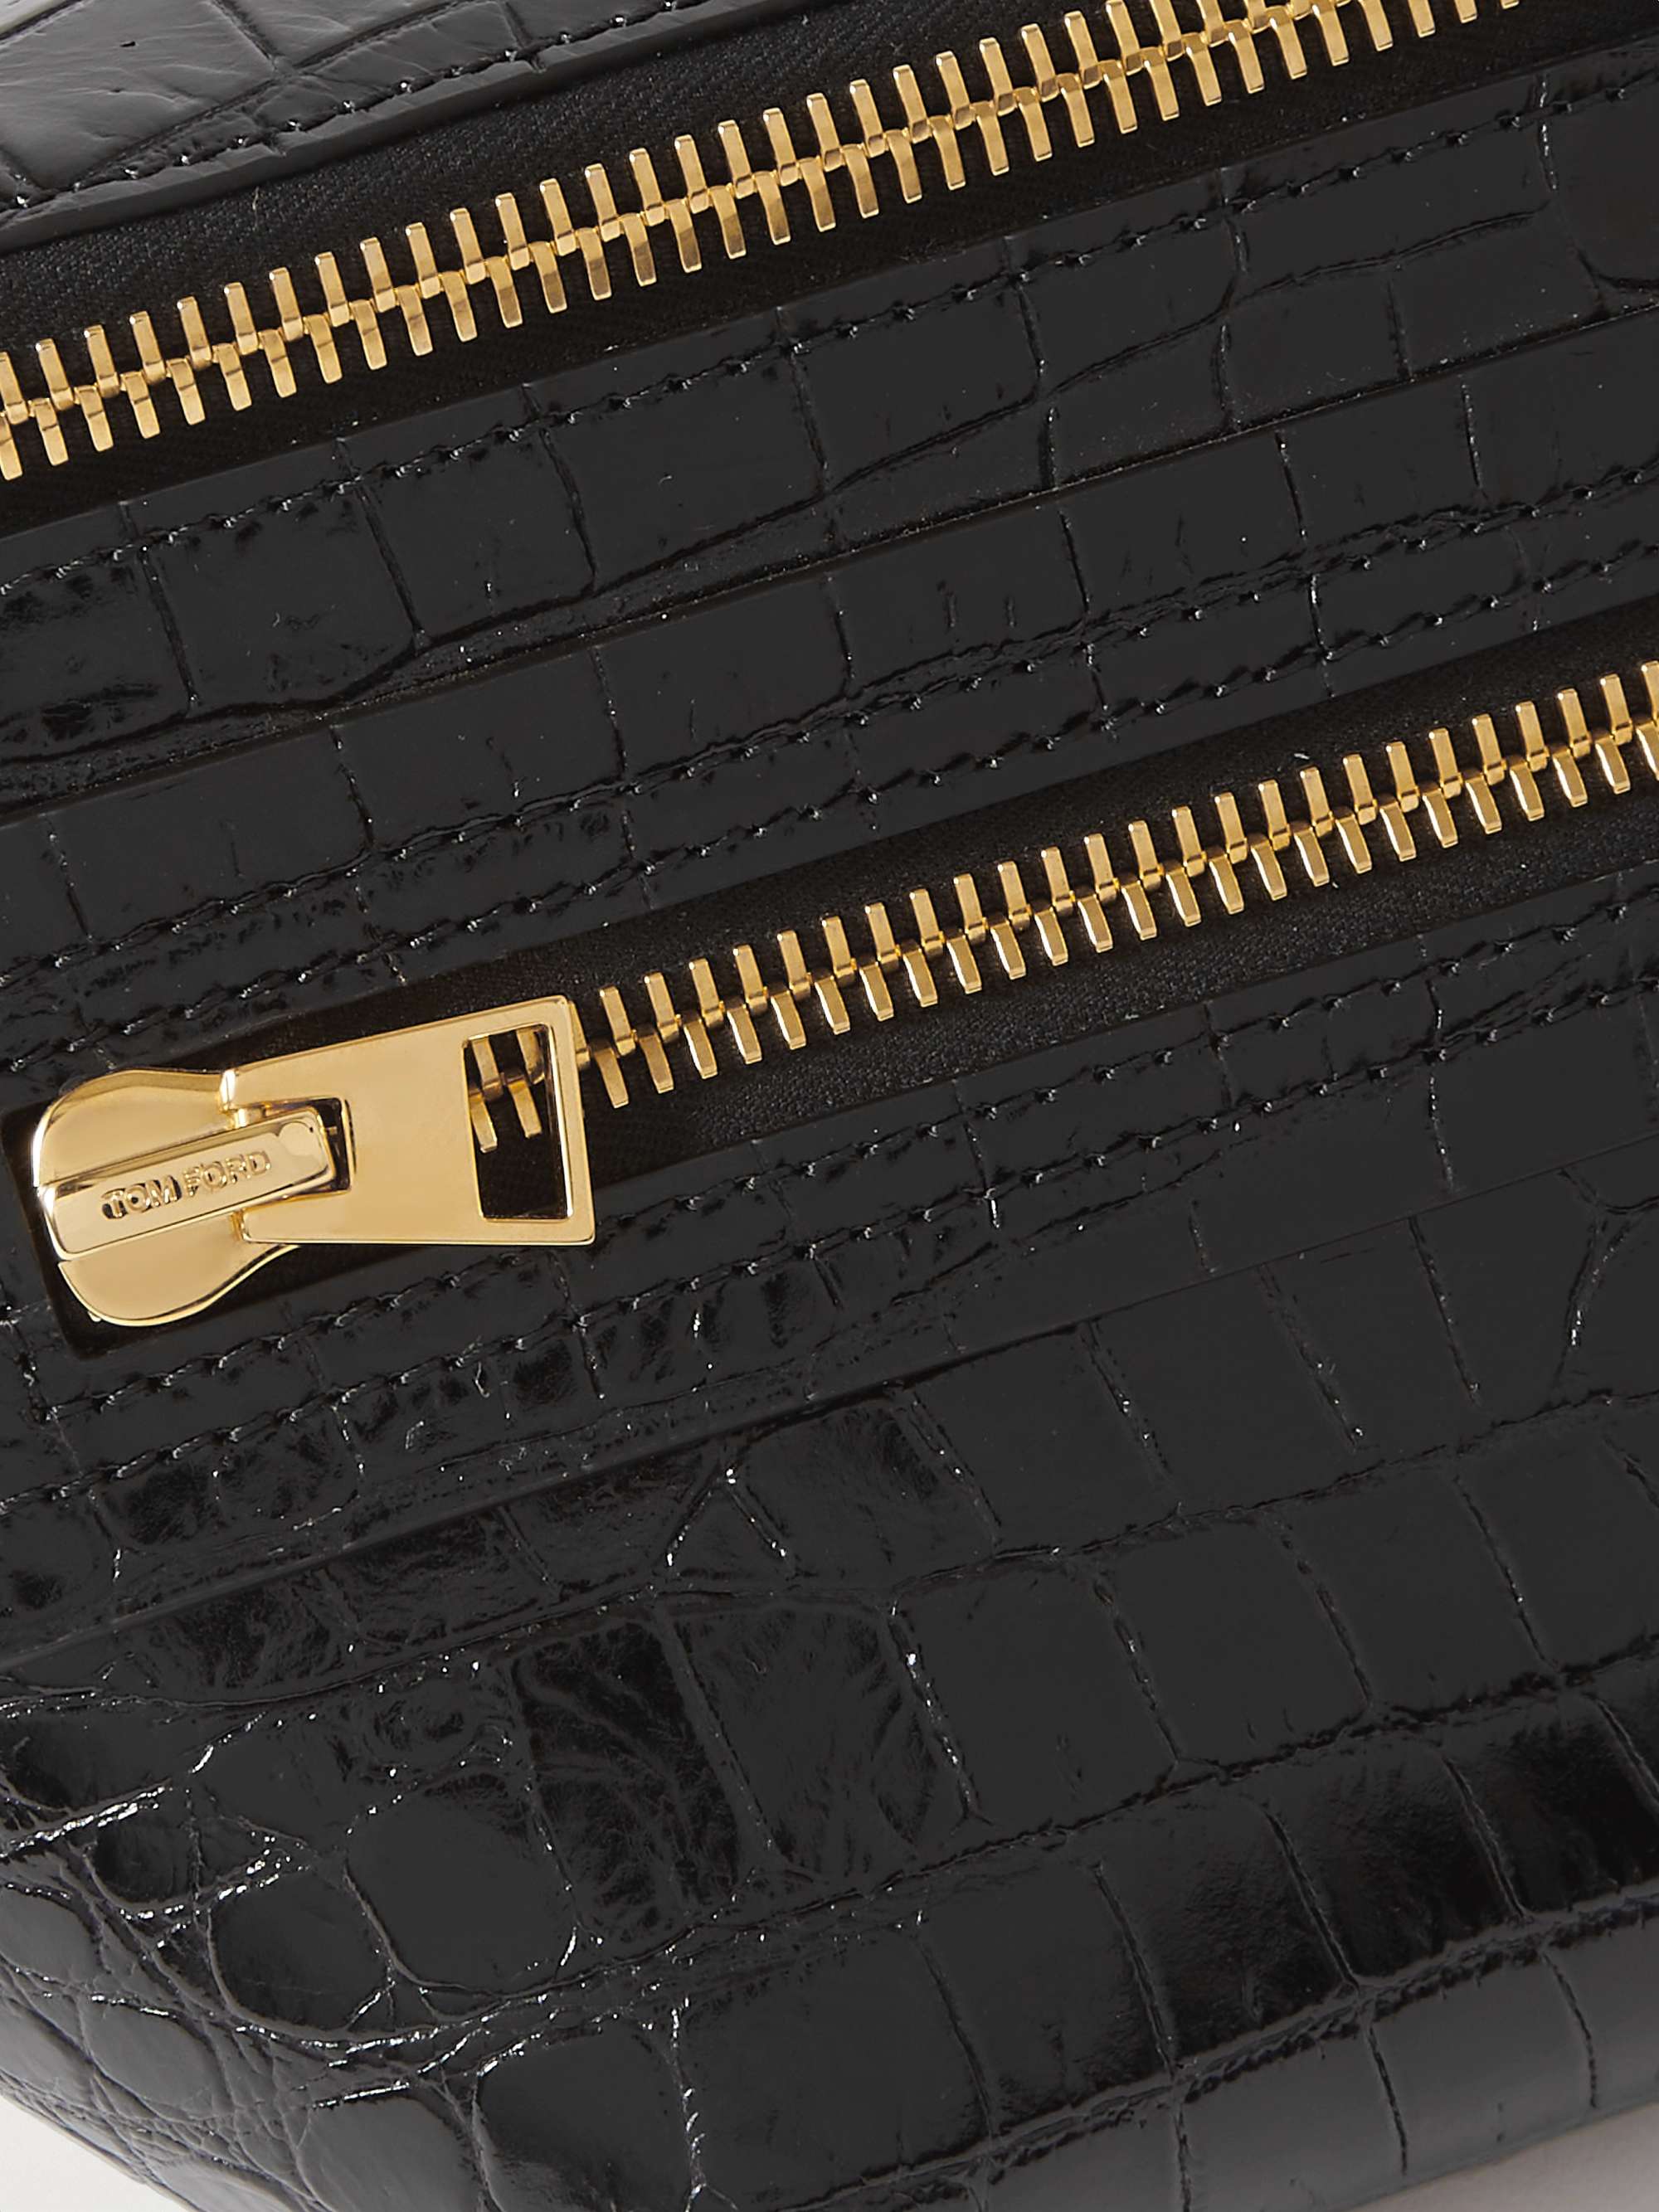 TOM FORD Buckley Croc-Effect Leather Belt Bag